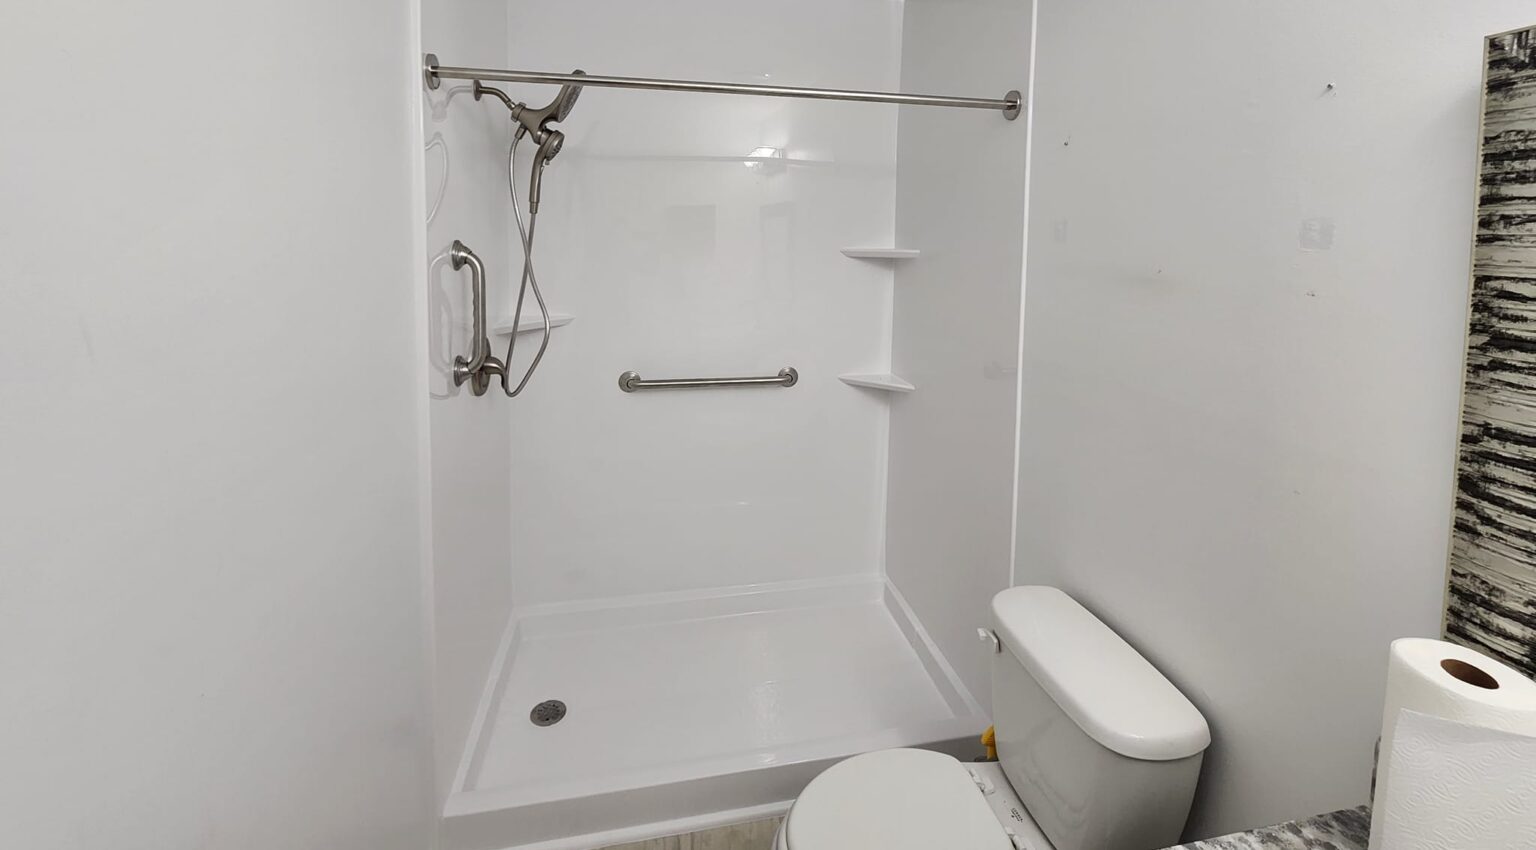 Alabaster bathtub and shower bathroom remodels